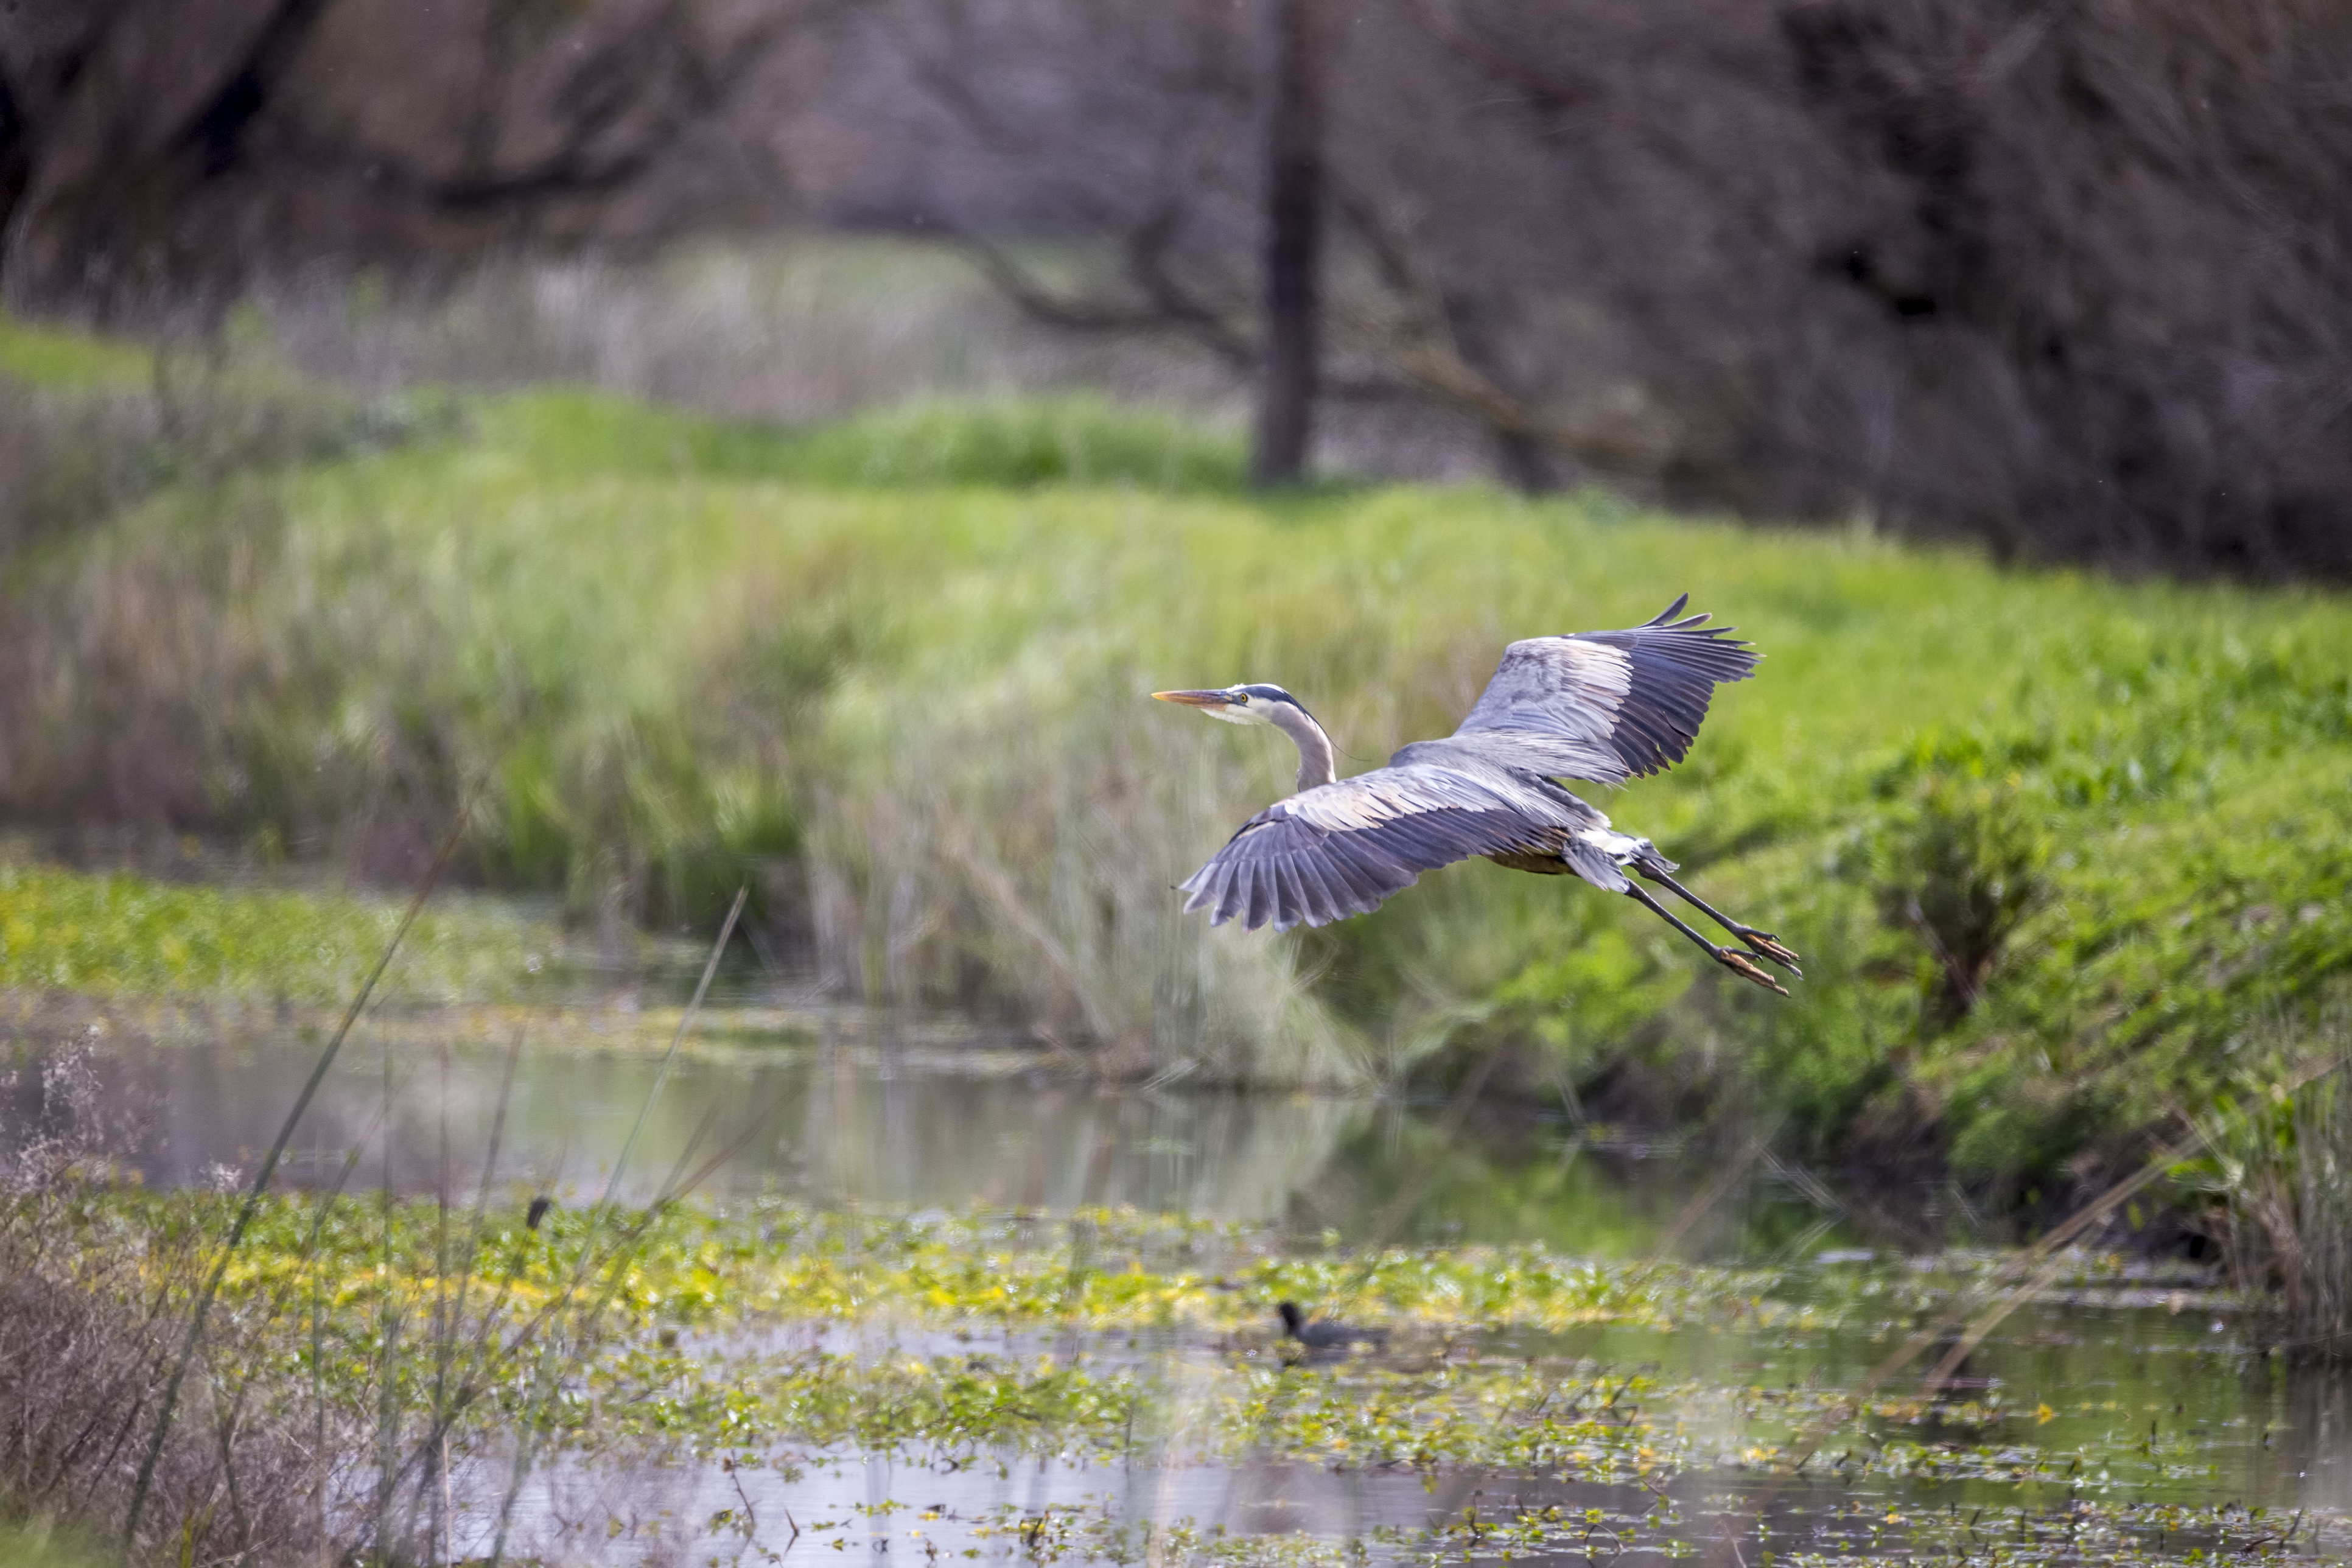 migratory bird flying low over wetlands